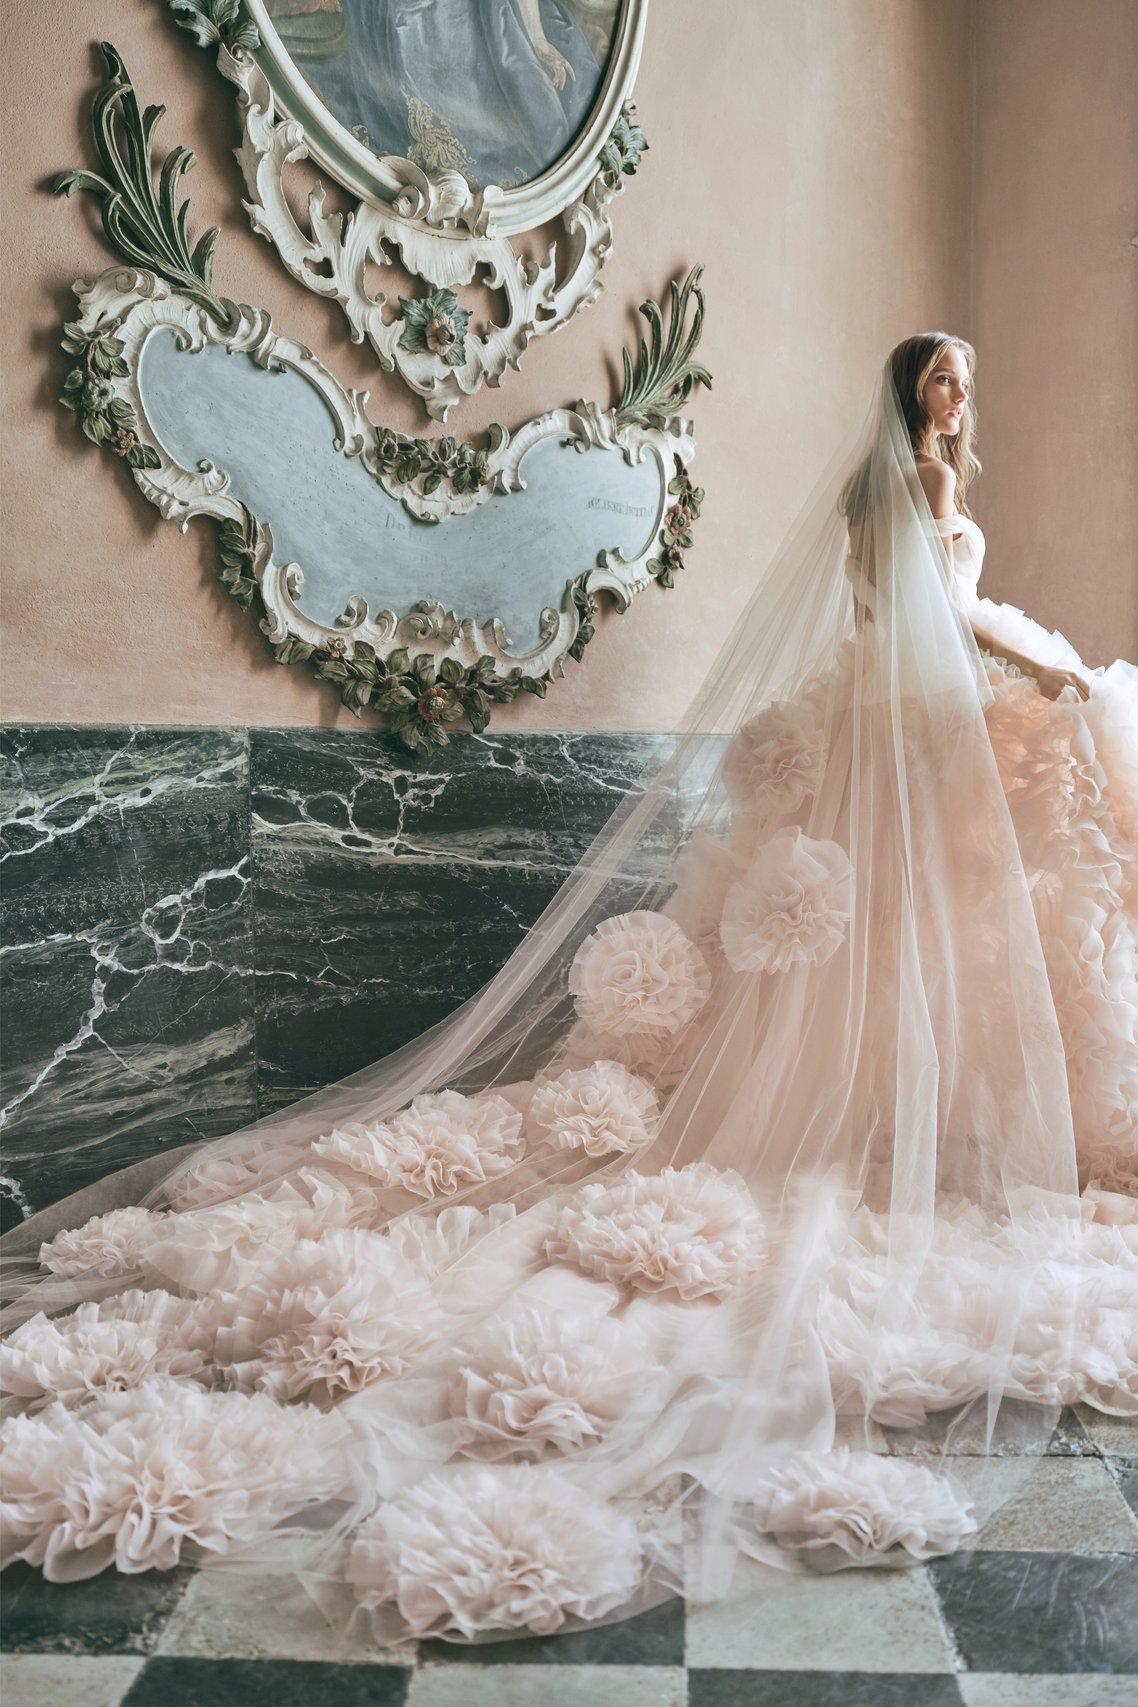 https://cdn0.weddingwire.com/article/3053/original/1280/jpg/3503-8-royal-veil-kt-merry-monique-lhuillier-wedding-veil-styles.jpeg